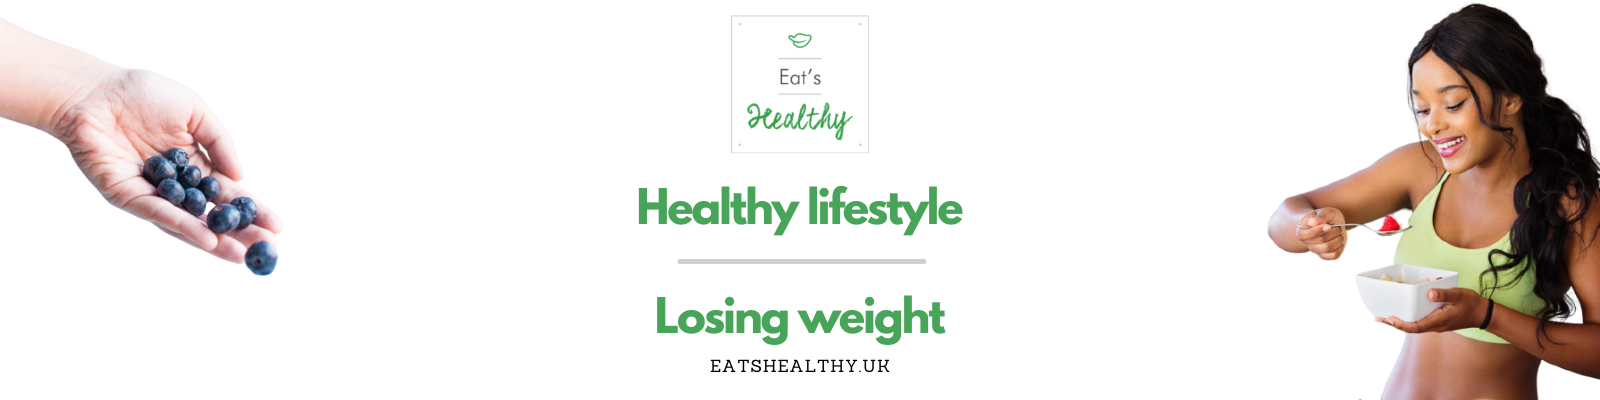 Eat’s Healthy